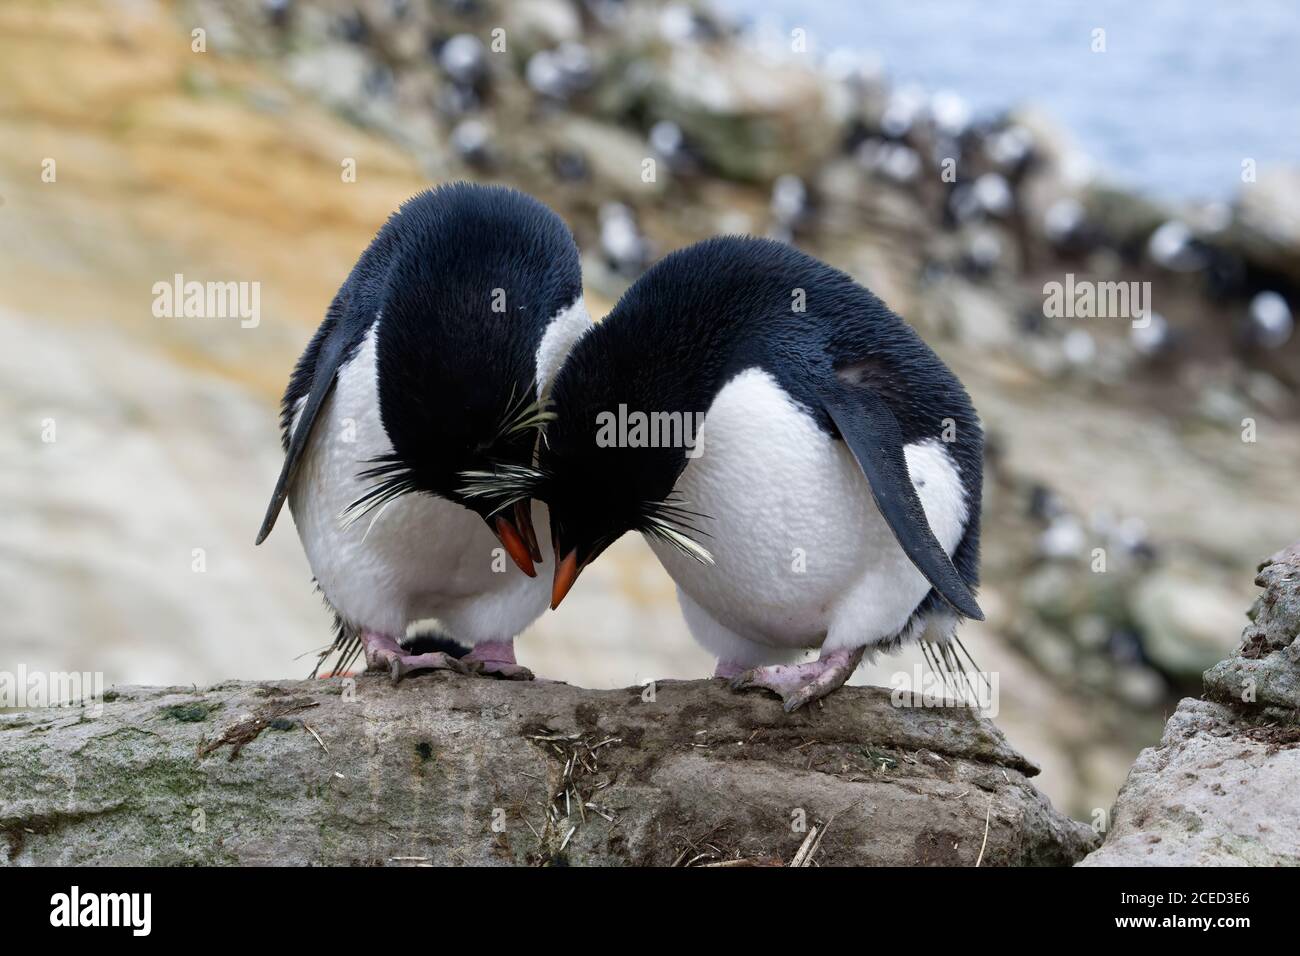 Coppia di pinguini delle Montagne Rocciose meridionali (Eudyptes crisocome), New Island, Falkland Islands, British Overseas Territory Foto Stock